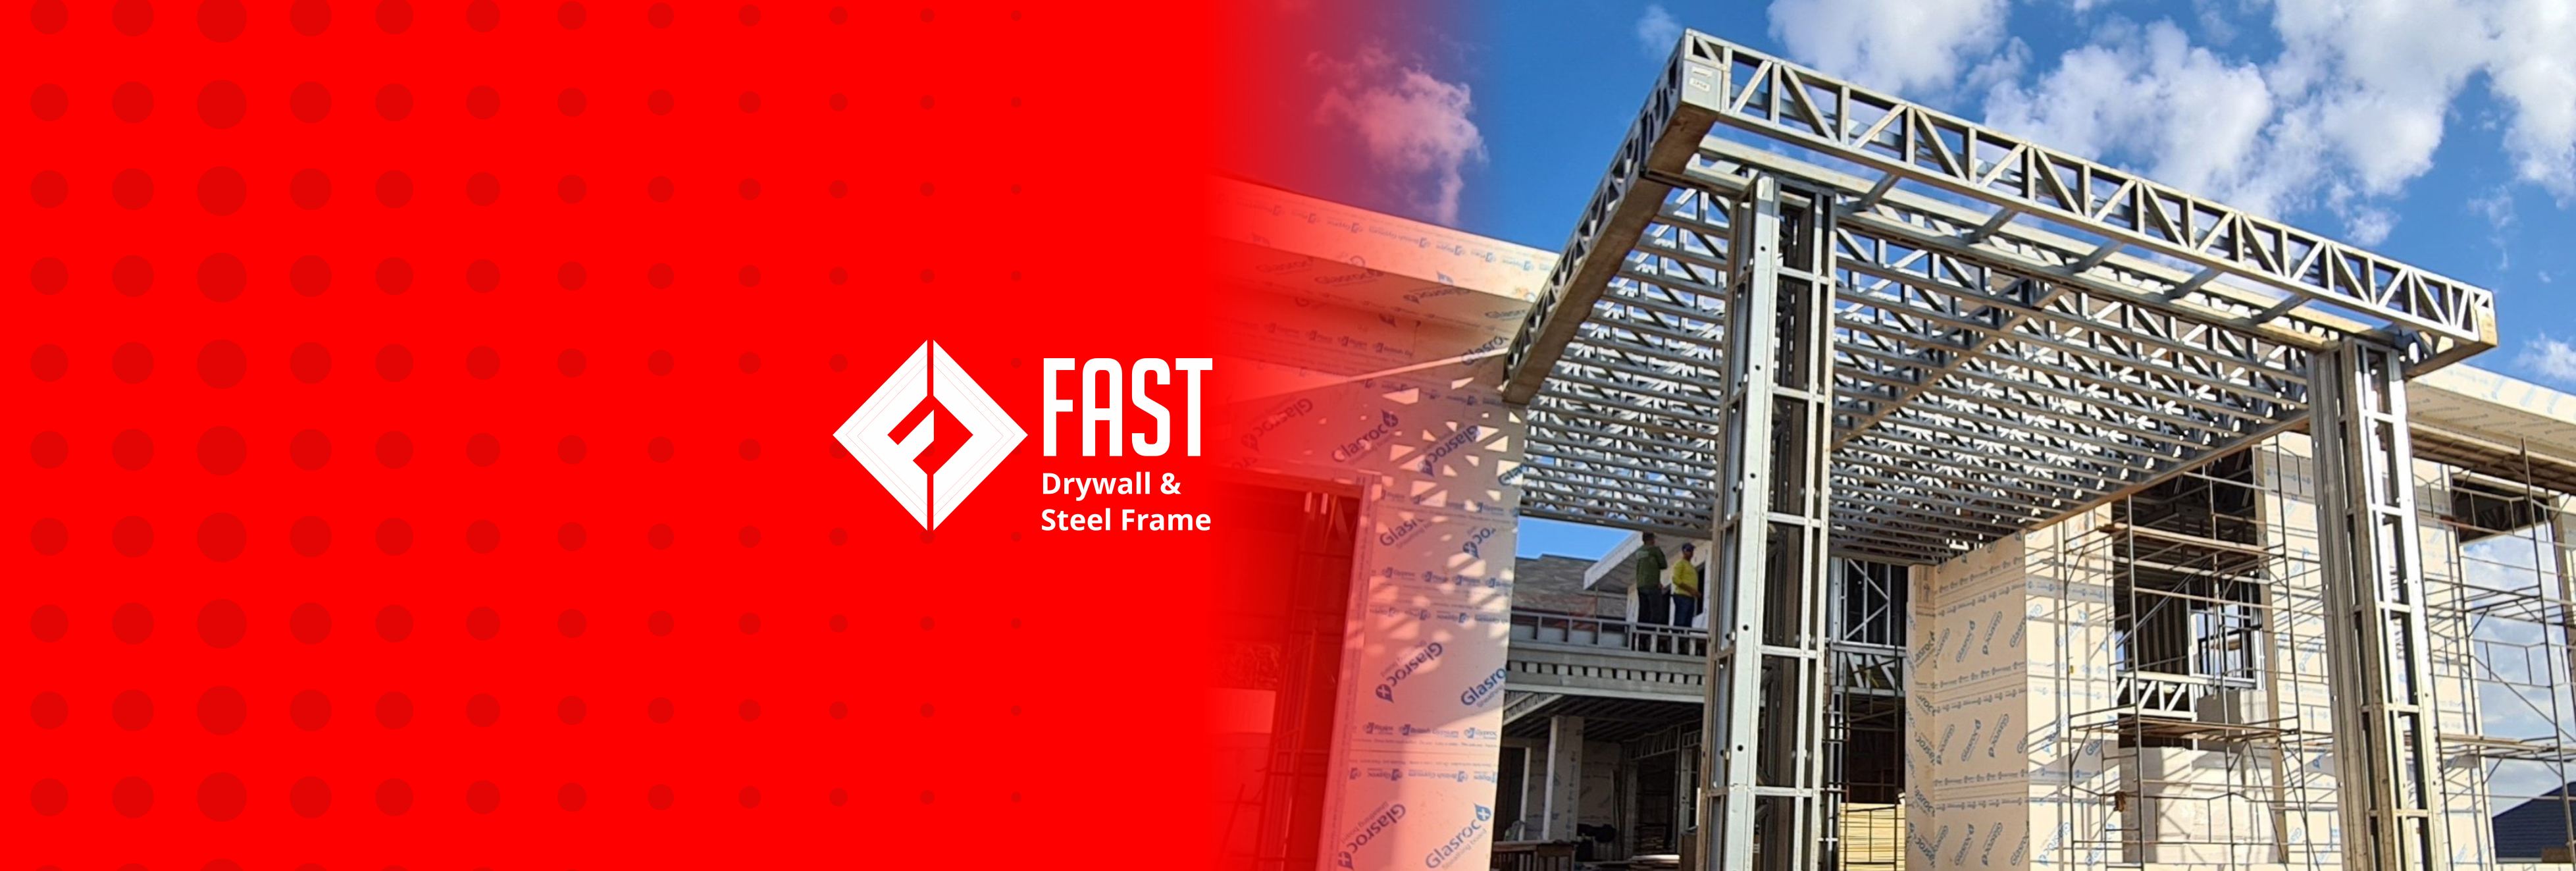 Logo da Fast e uma estrutura de steel frame